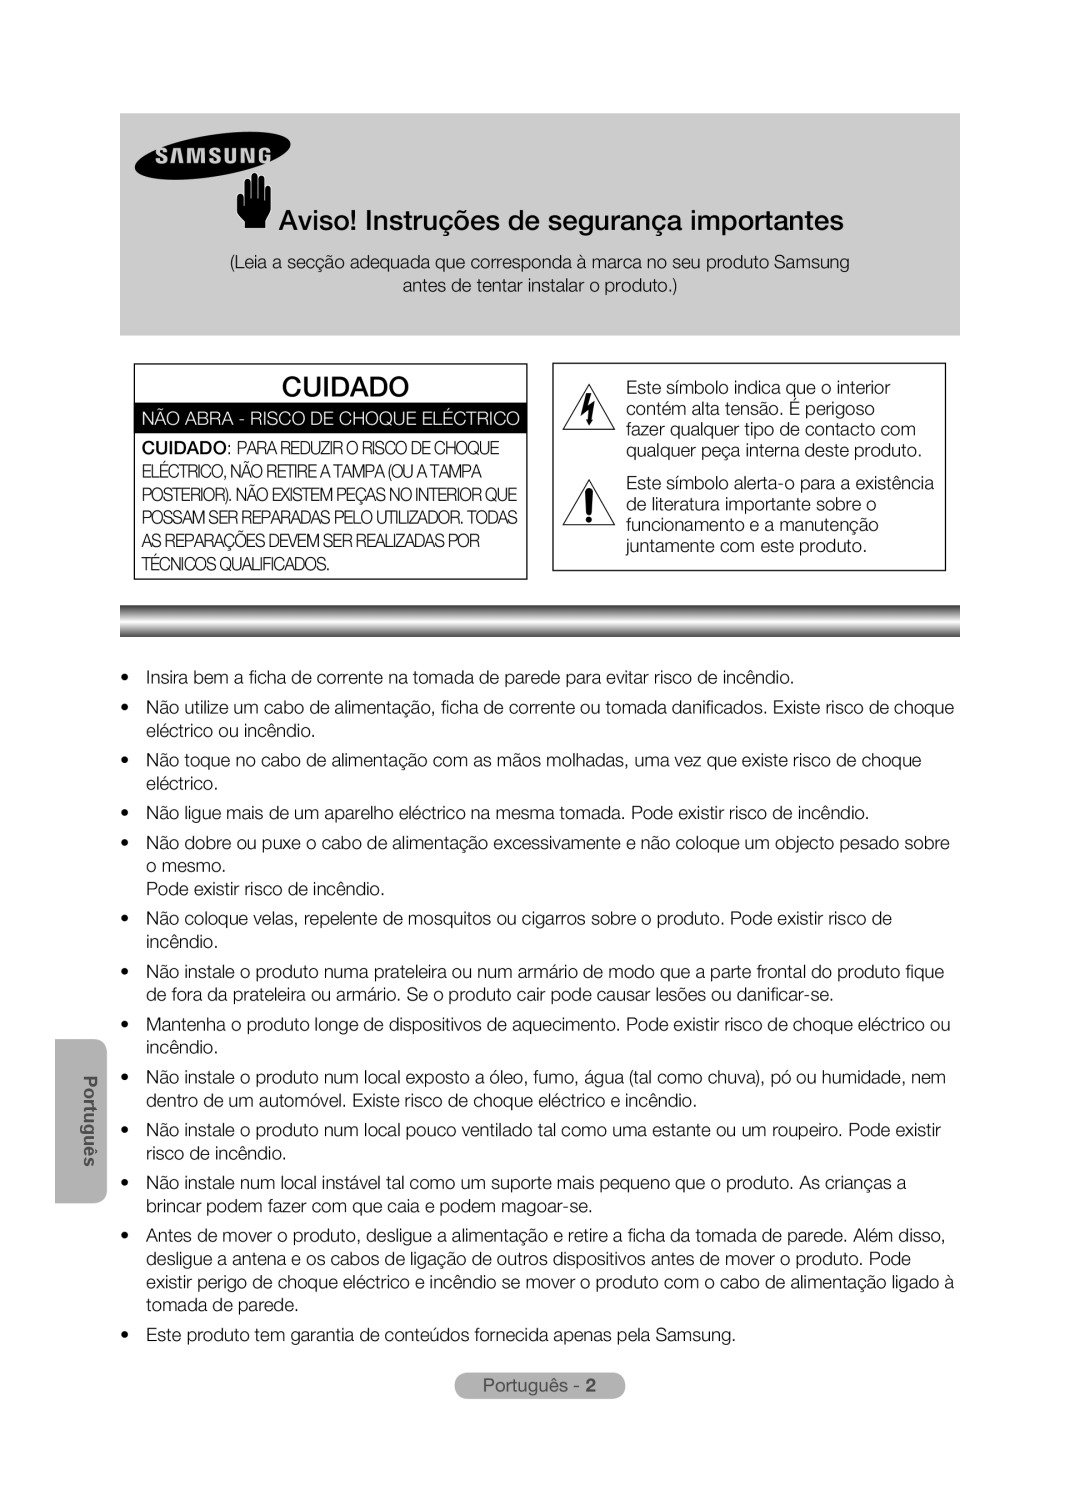 Samsung MR-16SB2 Aviso! Instruções de segurança importantes, Cuidado, Não Abra - Risco De Choque Eléctrico, Português 